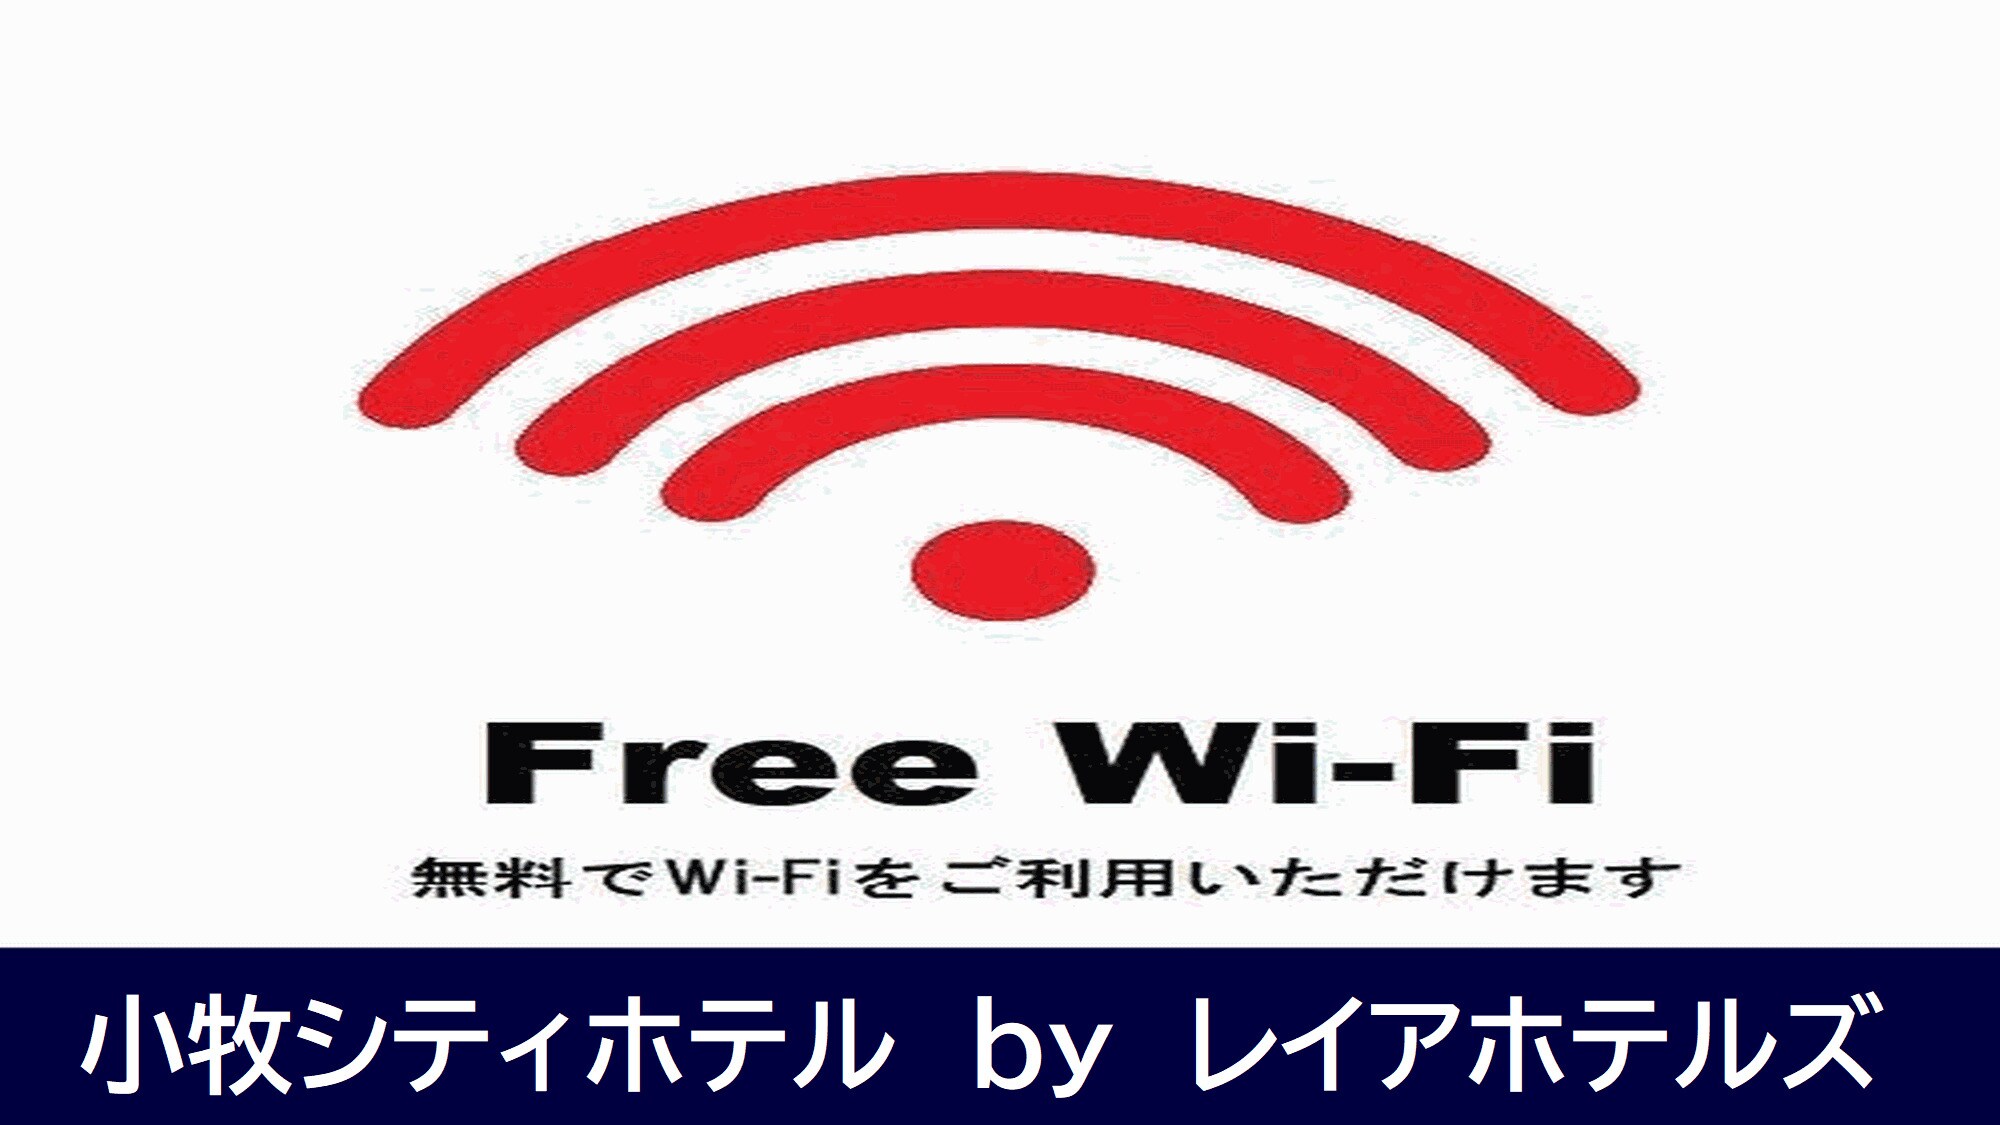 WI-FI gratis (5G)